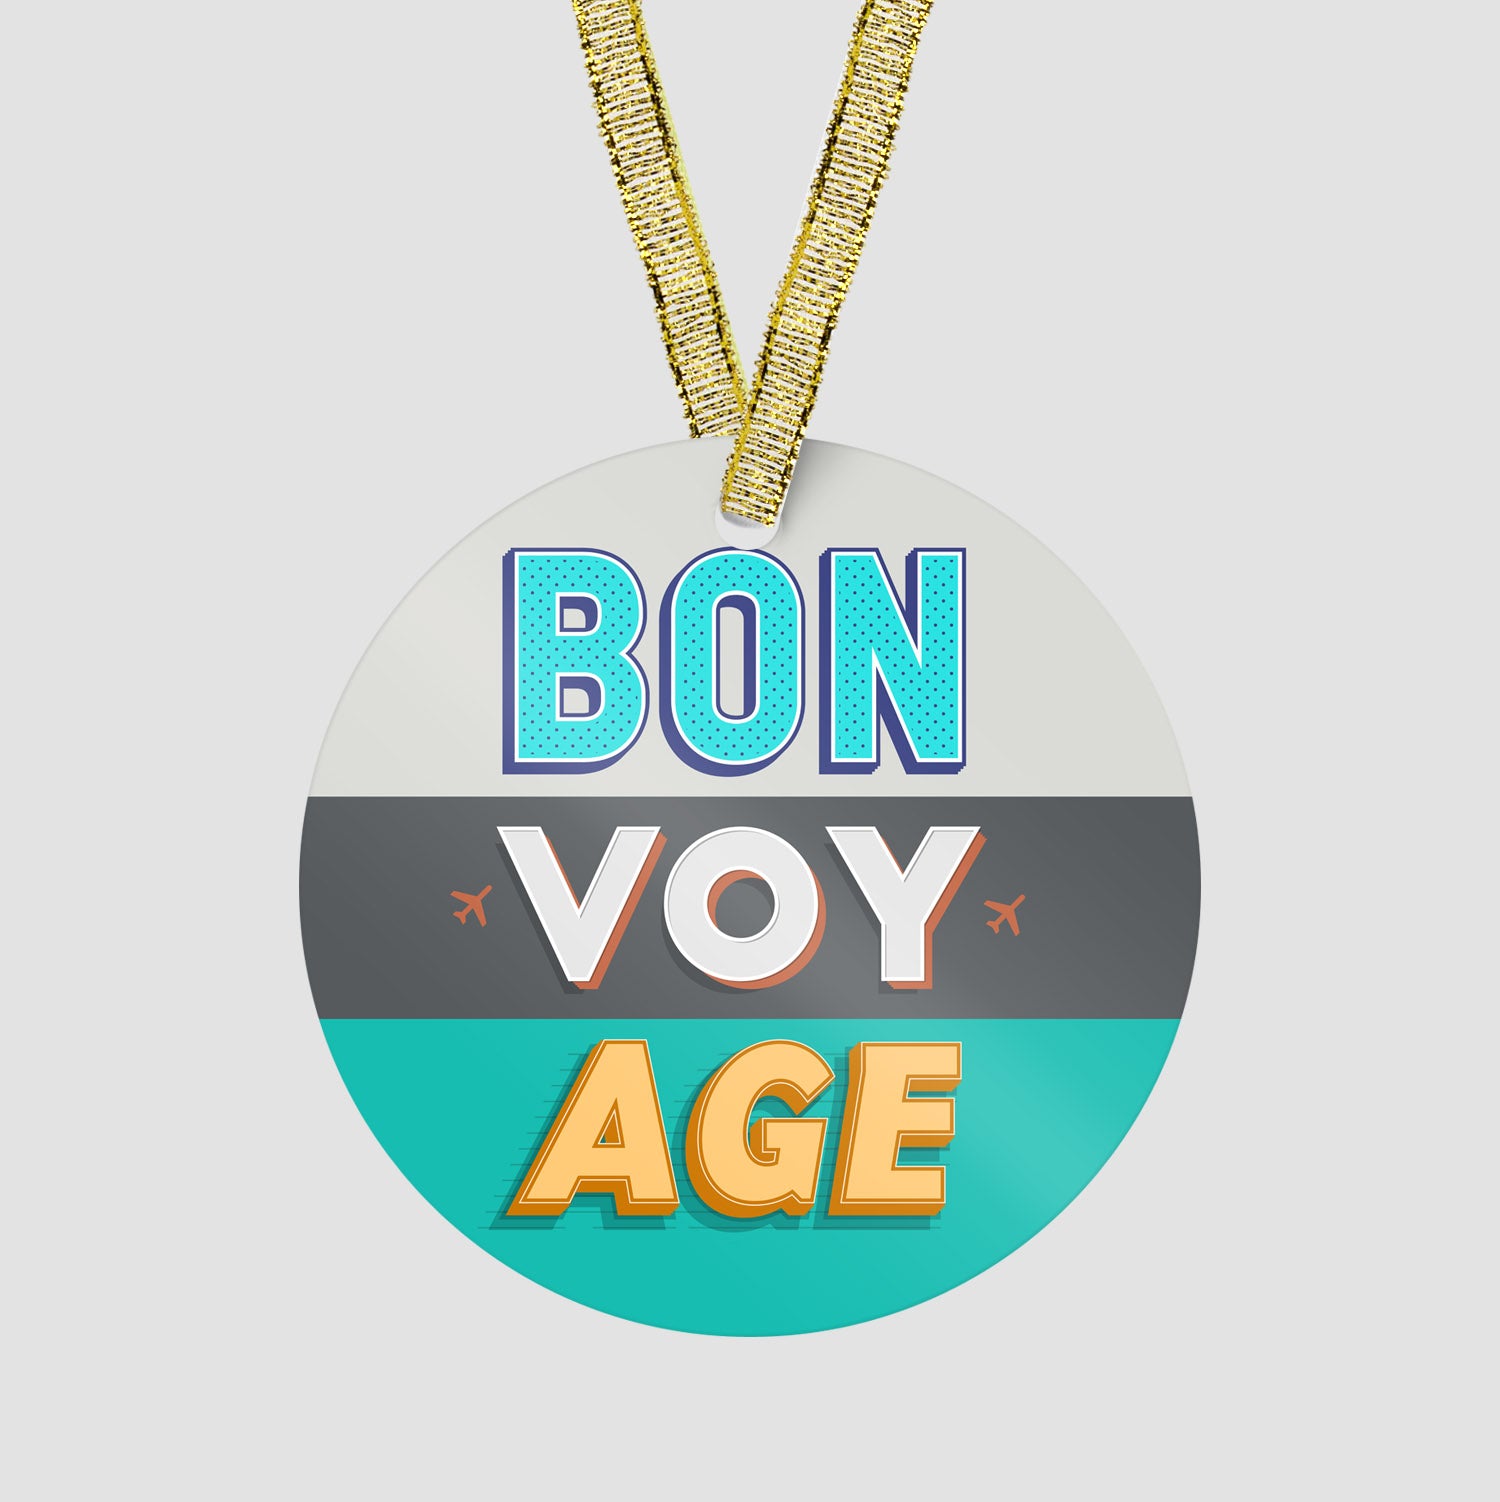 BON VOY AGE - Ornament - Airportag